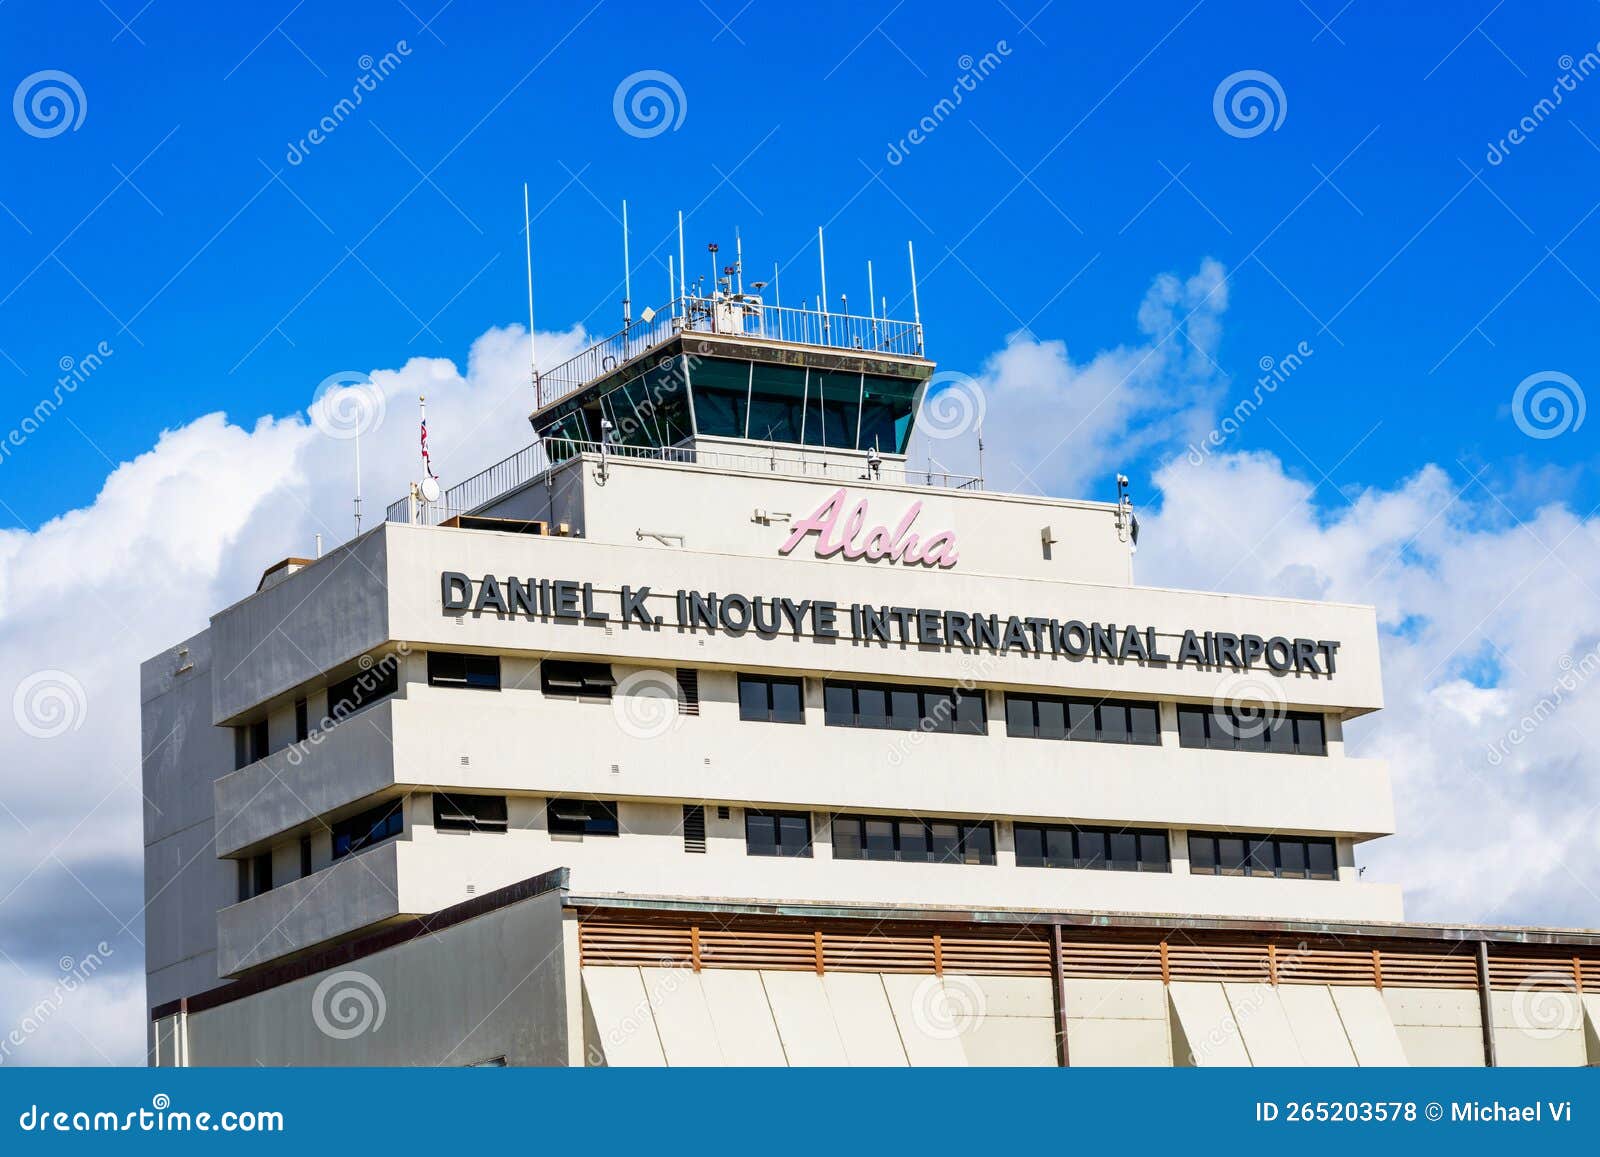 Daniel K. Inouye International Airport